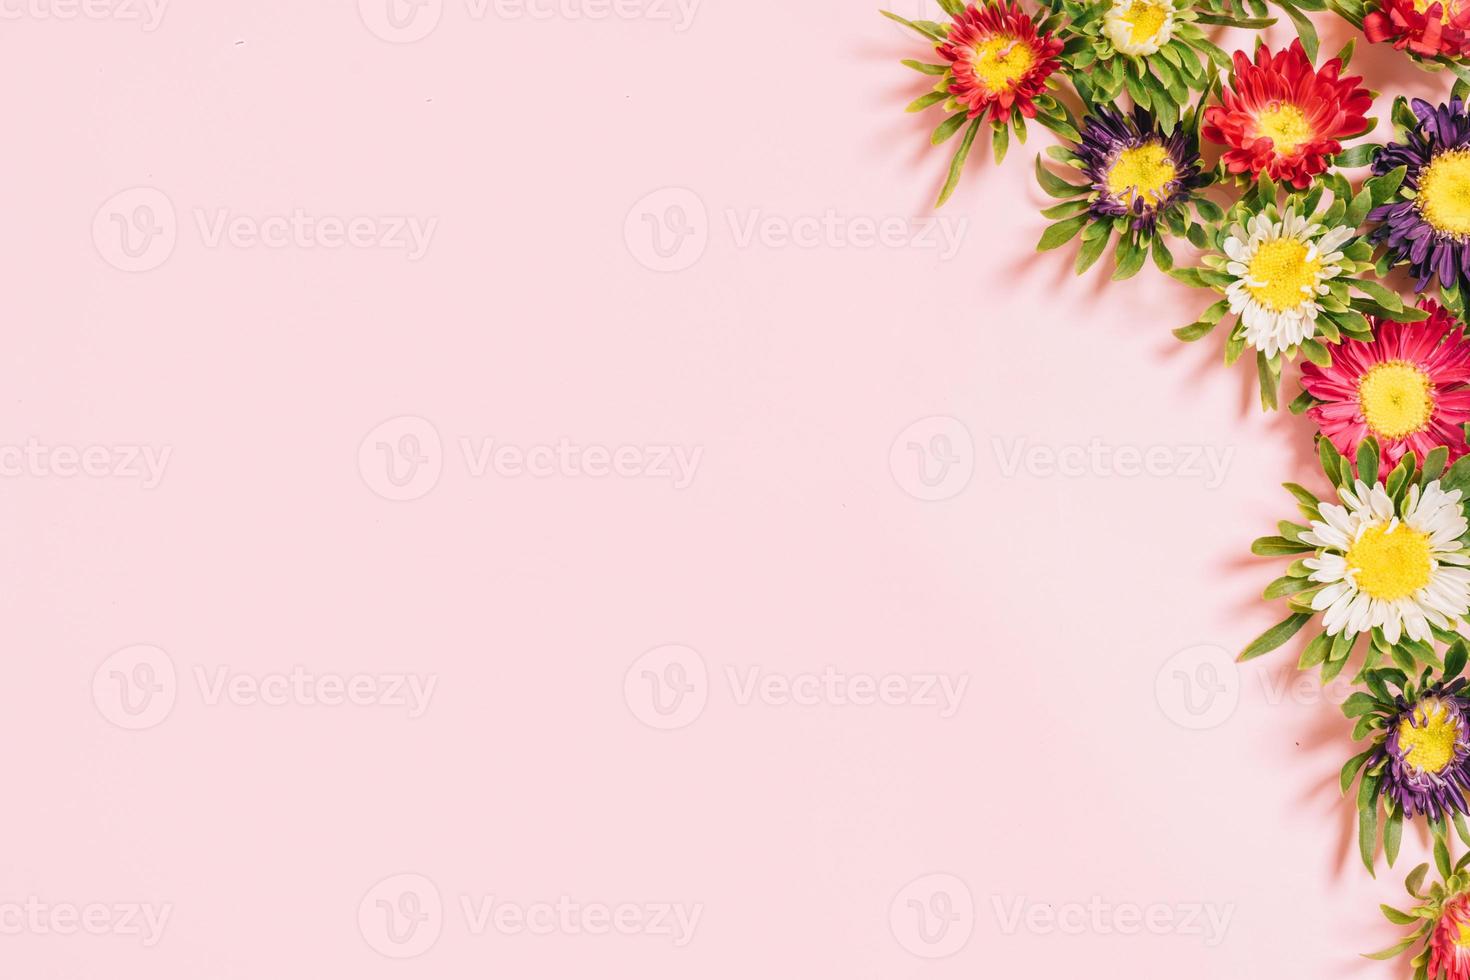 kleurrijke bloemen gerangschikt op een roze achtergrond foto